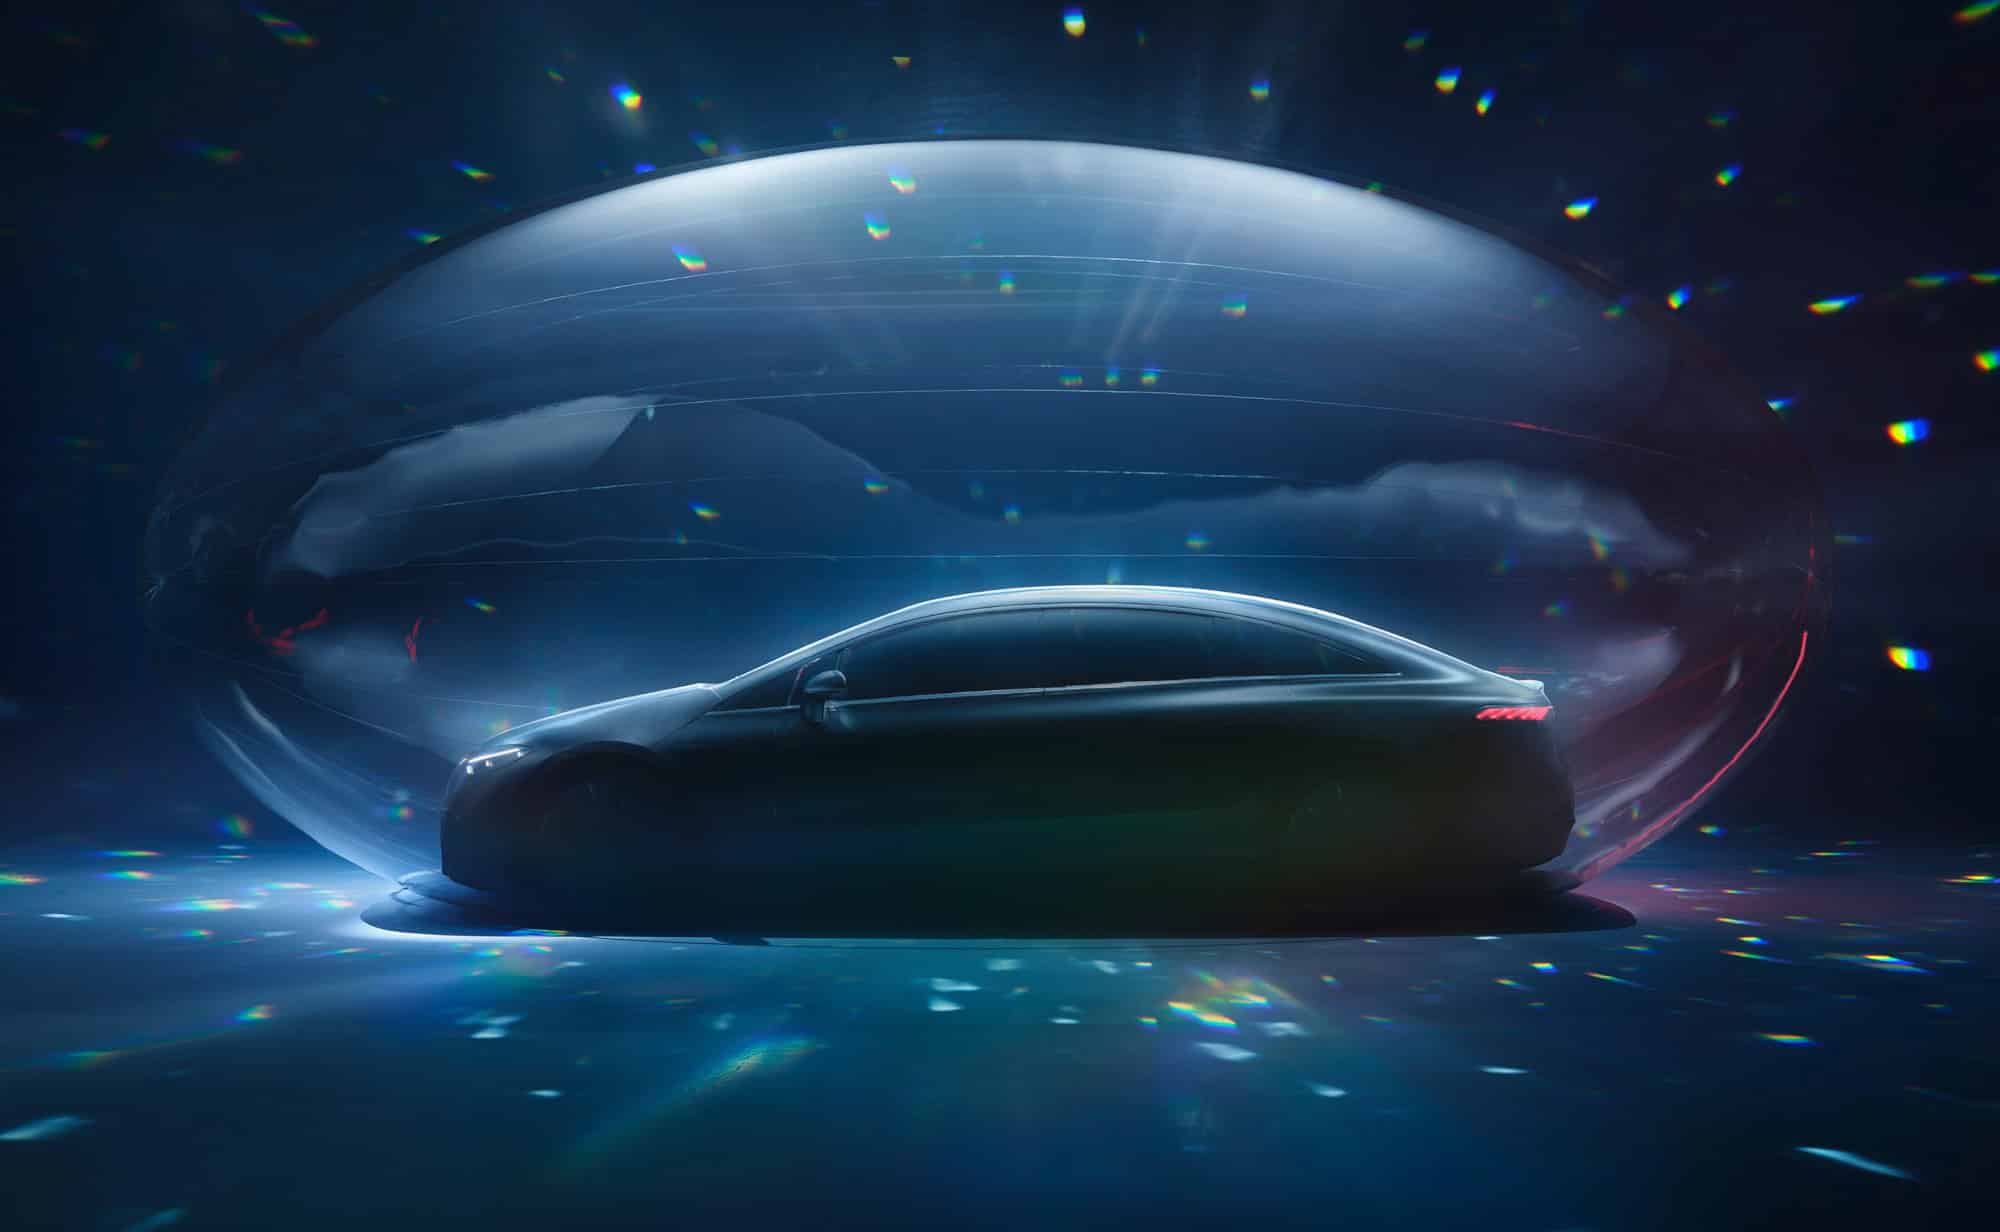 El nuevo eléctrico de Mercedes-Benz, EQS se presentará el 15 de abril